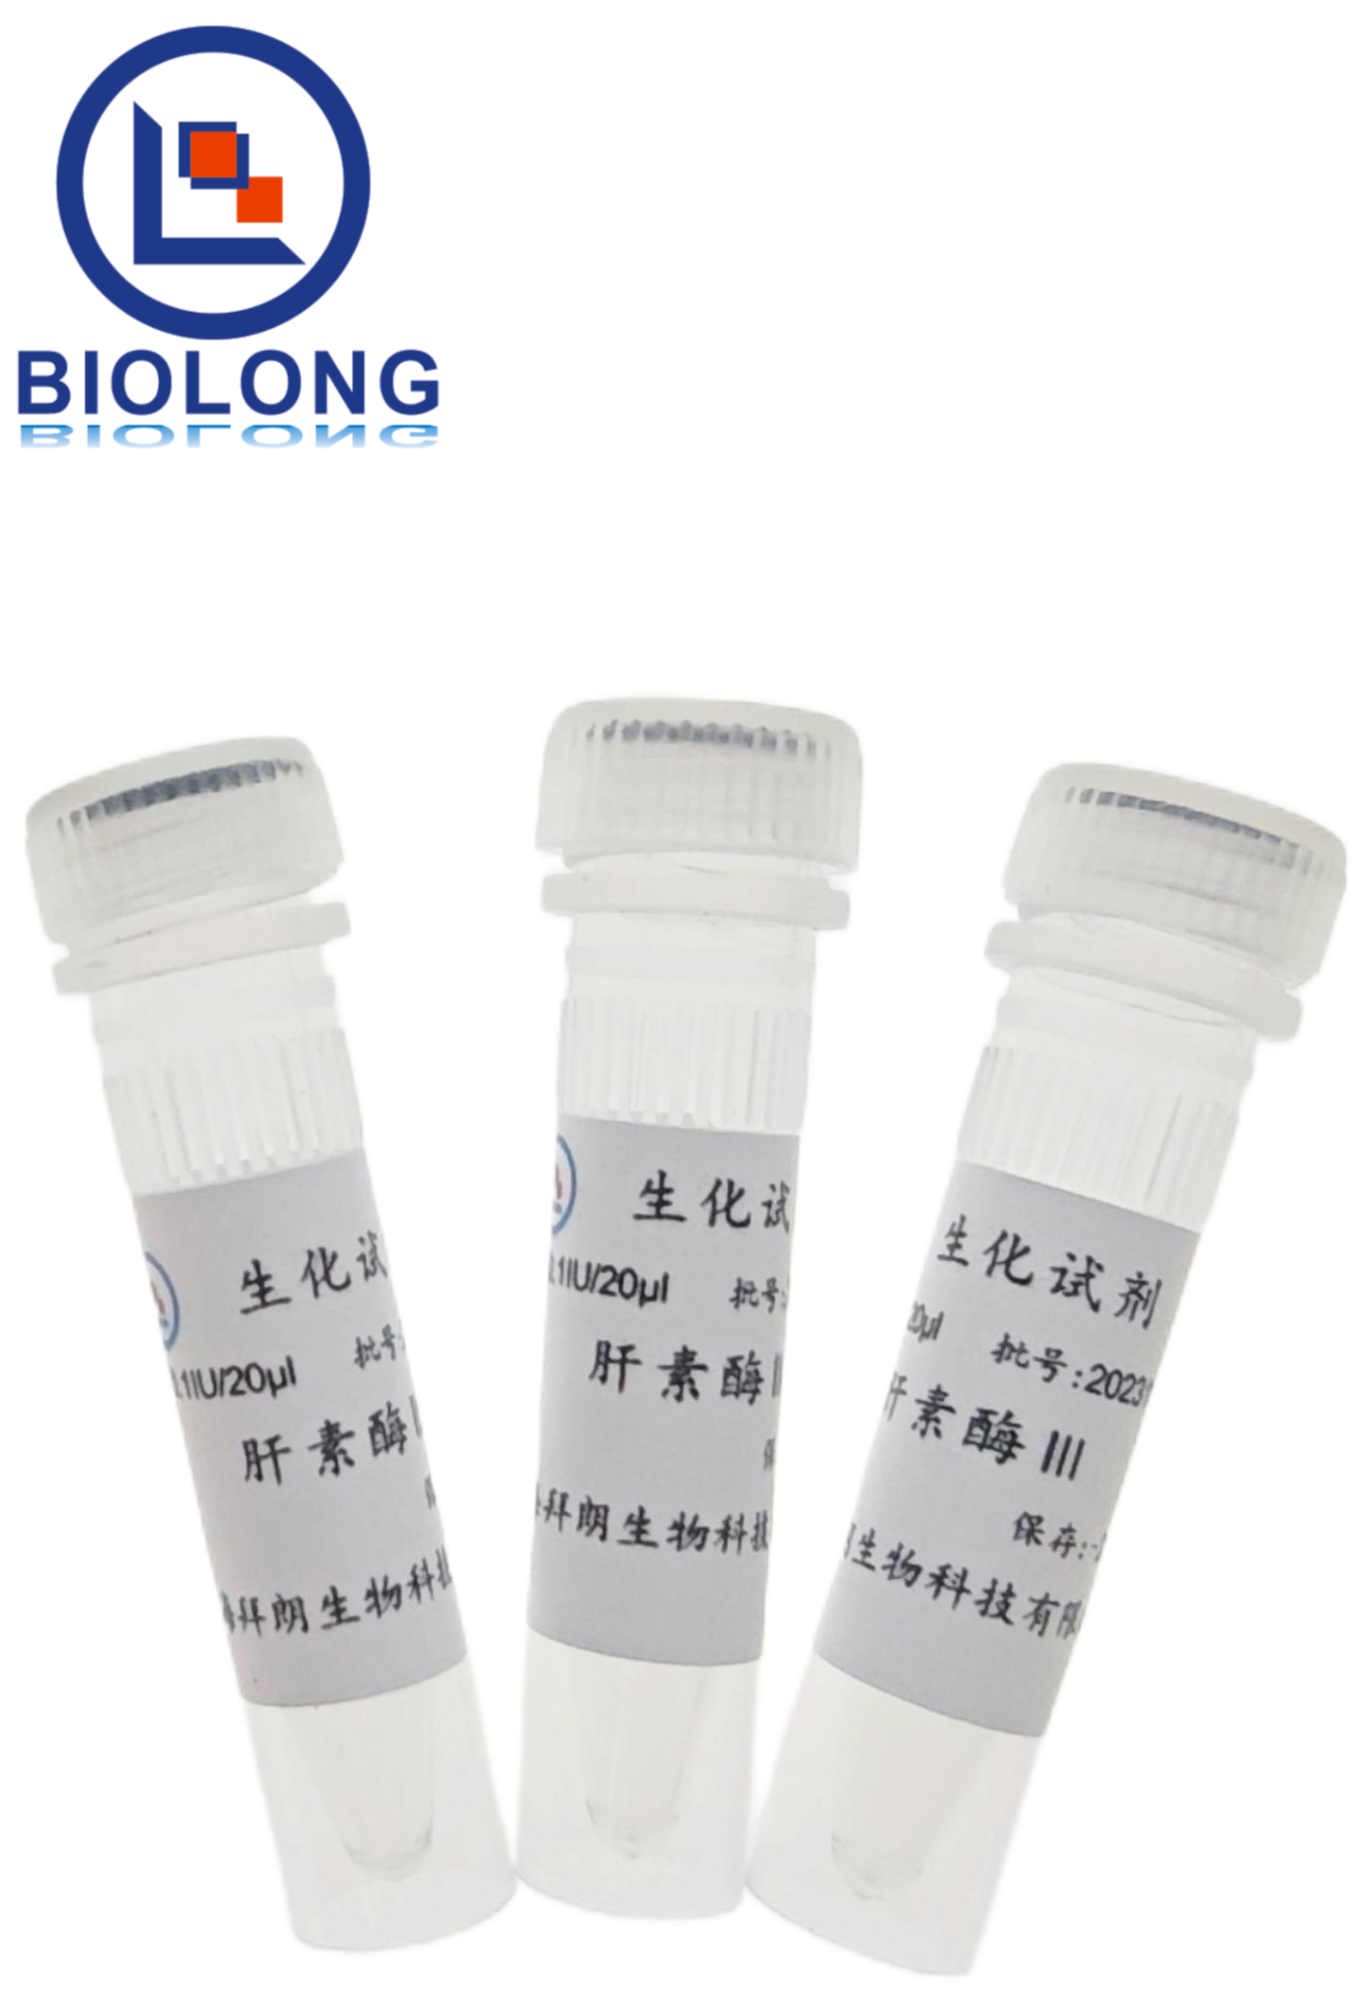 肝素酶Ⅲ（编号：BLE011-1B） - 1